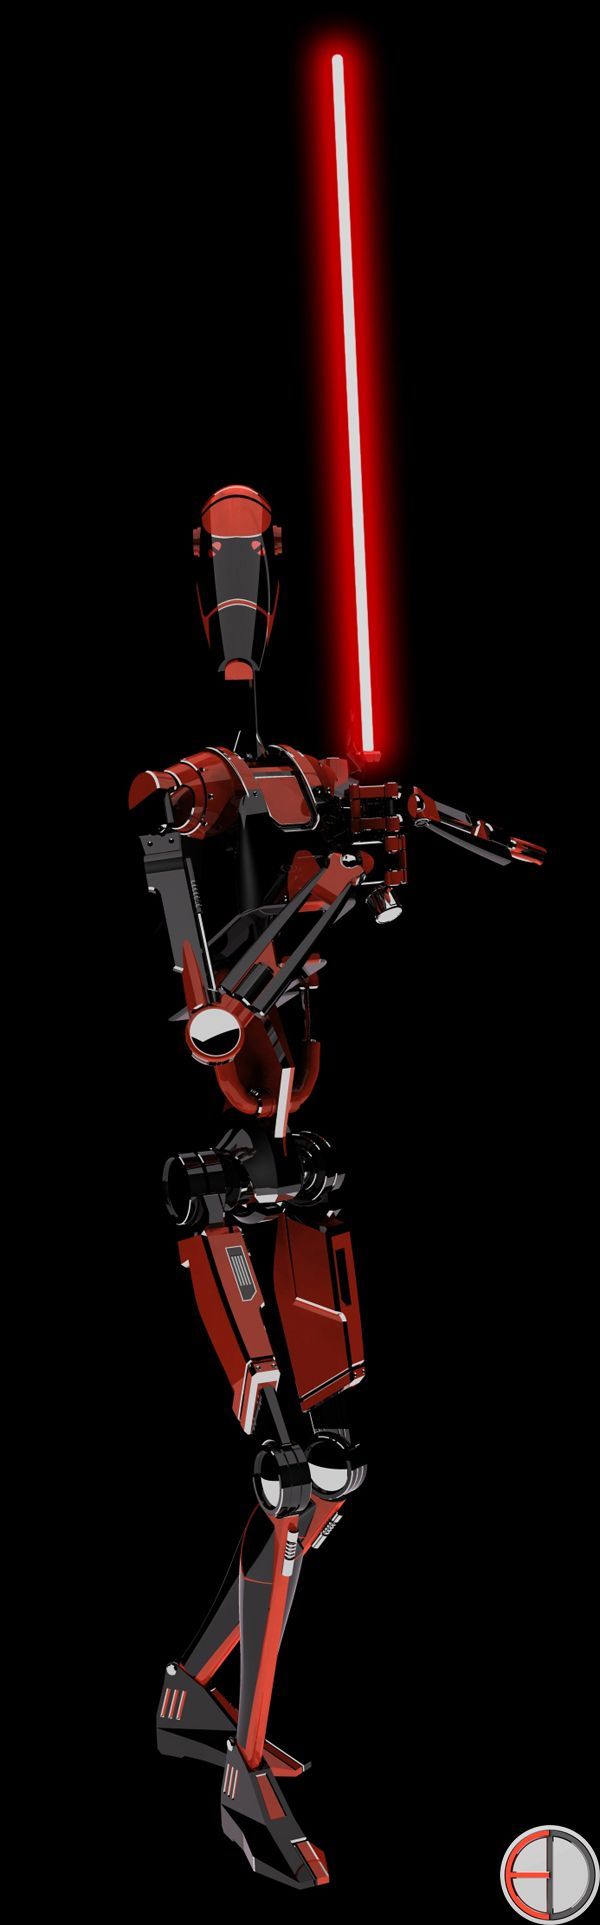 Dark Battle Droid. Star wars image, Star wars sith, Battle droid